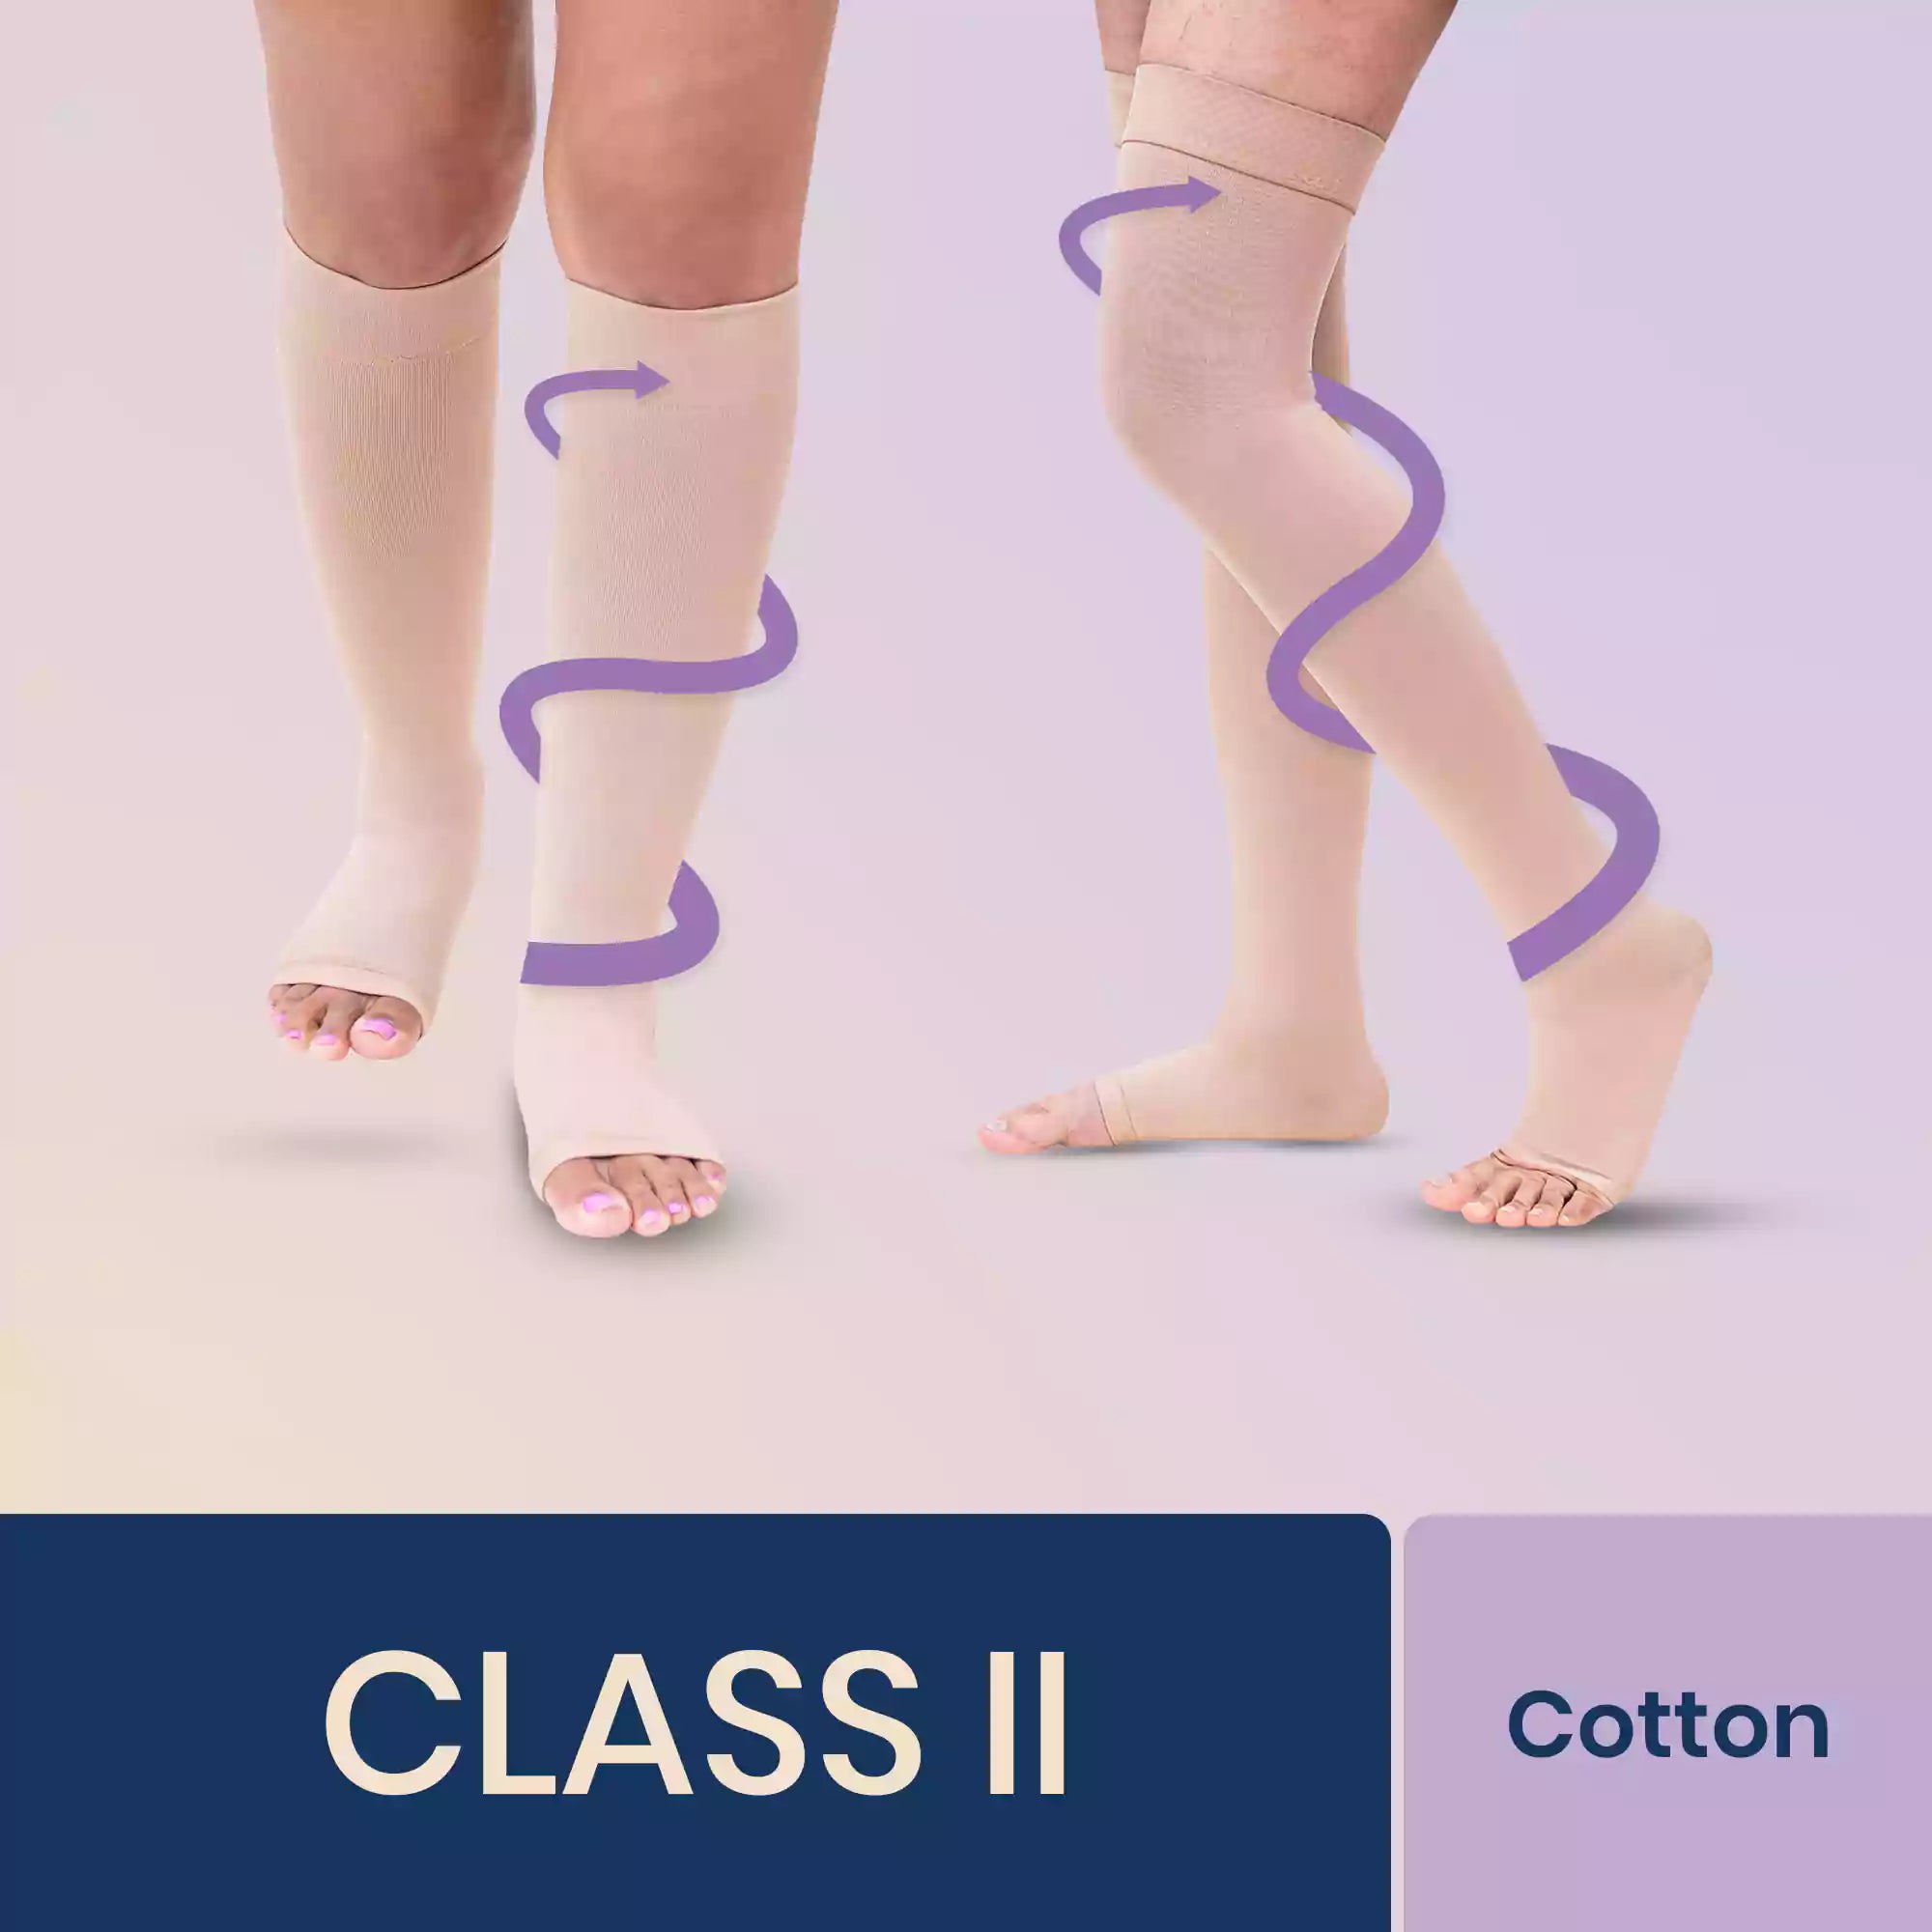 Sorgen Premiere Class 2 Compression Stockings –